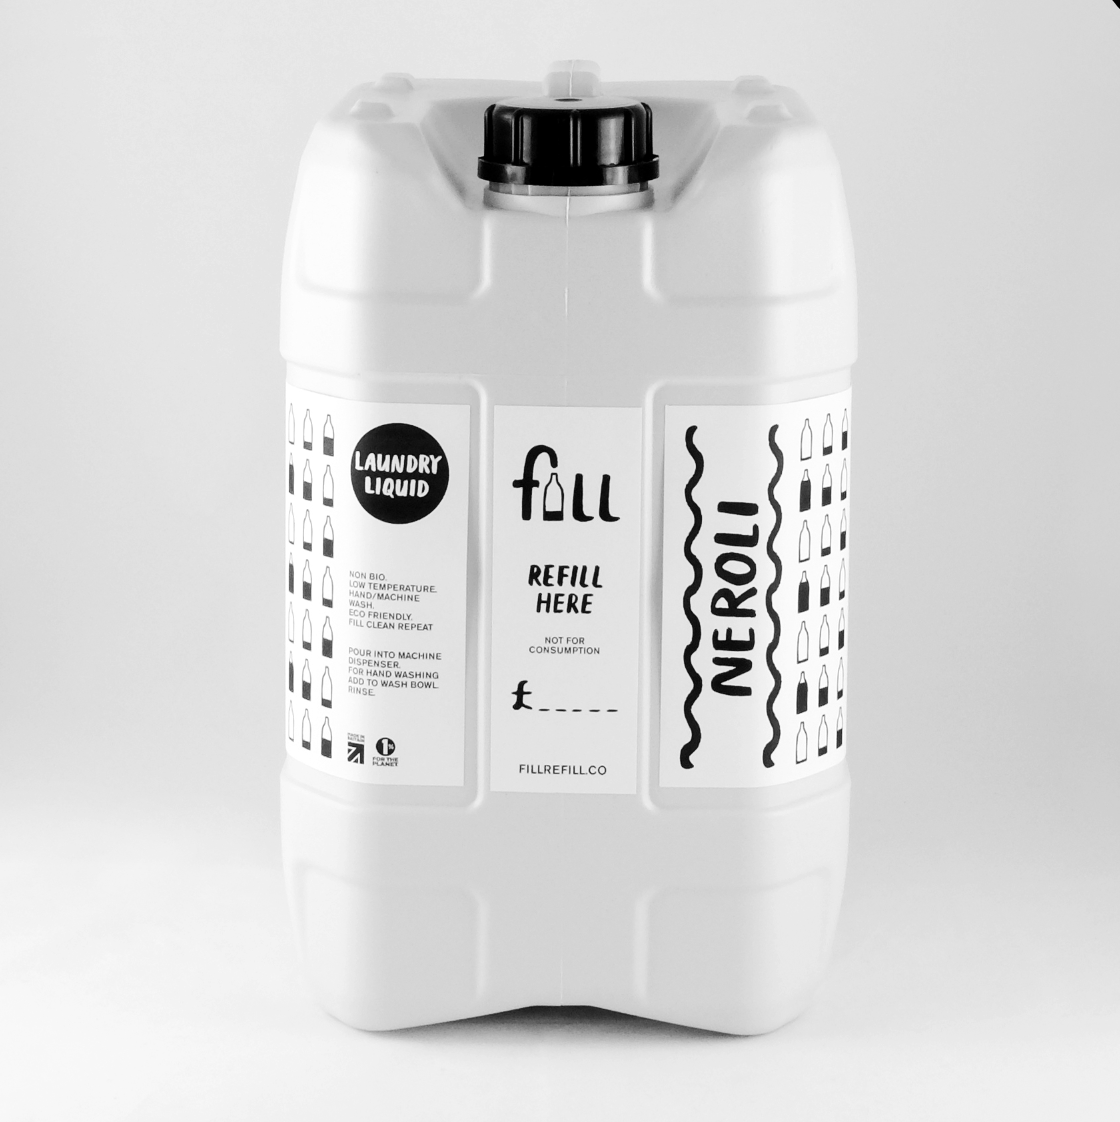 Fill - High Concentrate Laundry Liquid - Neroli (Per 100ml)